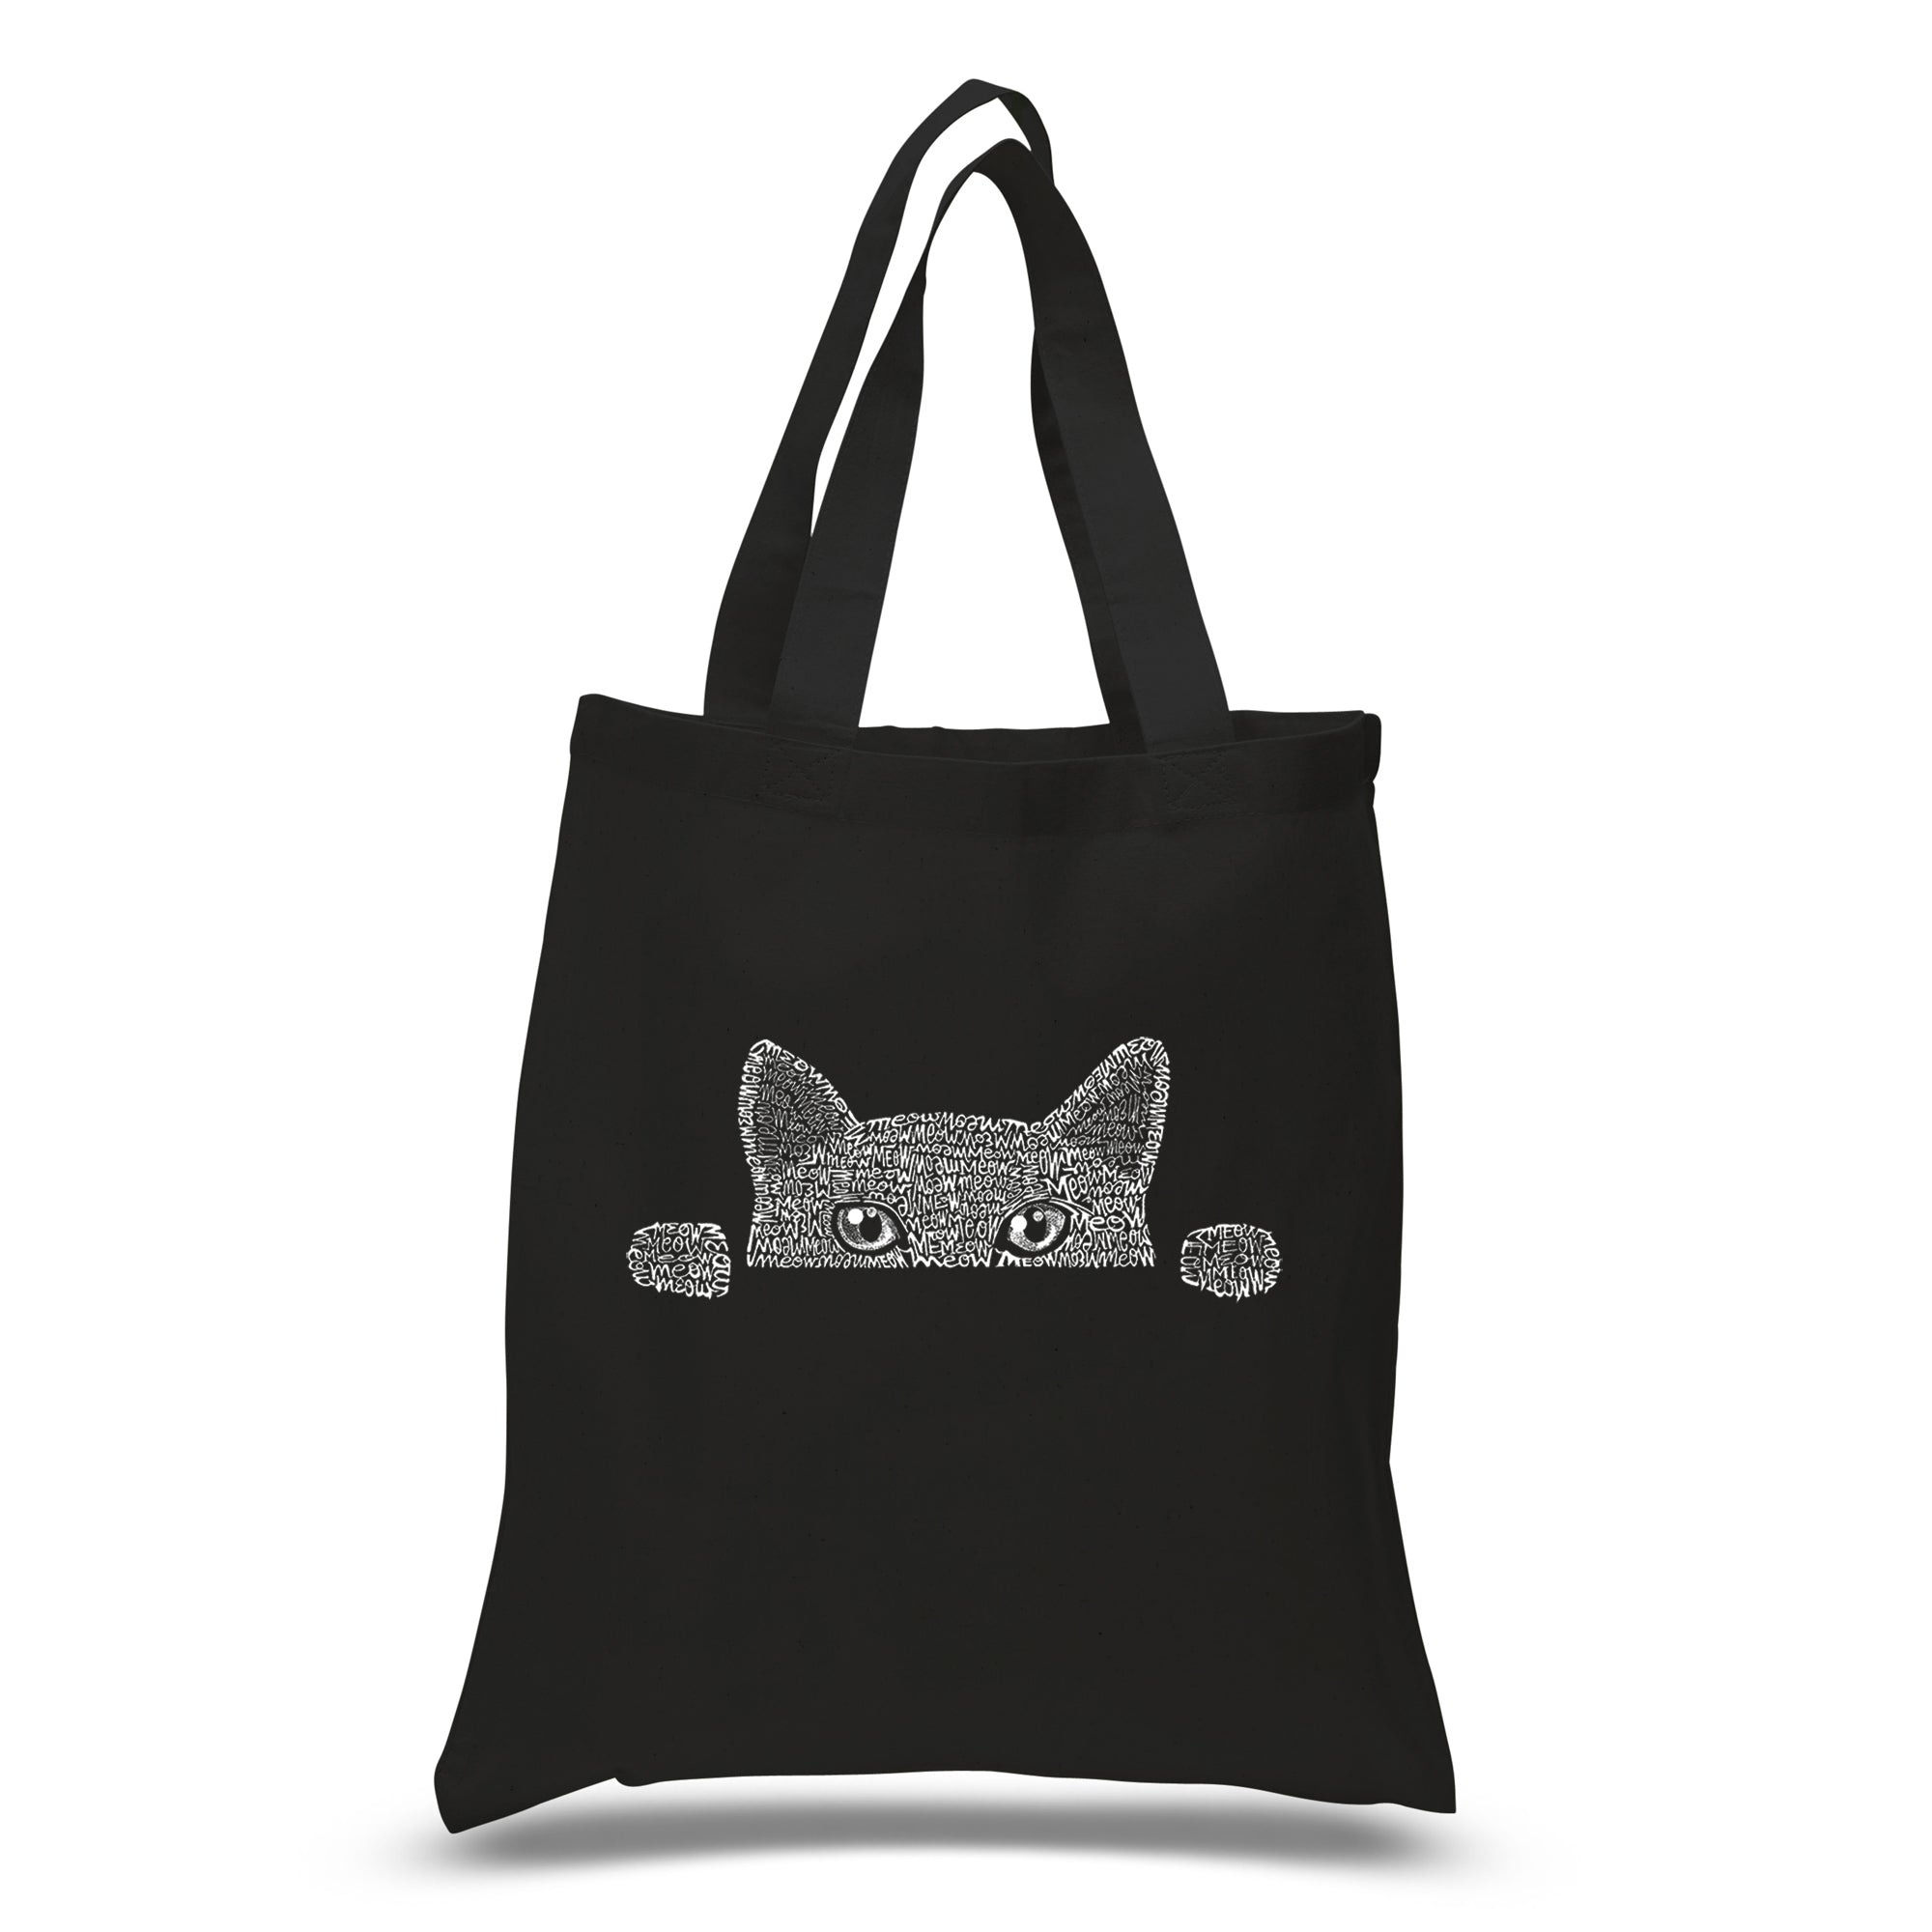 Peeking Cat - Small Word Art Tote Bag - Small - Black